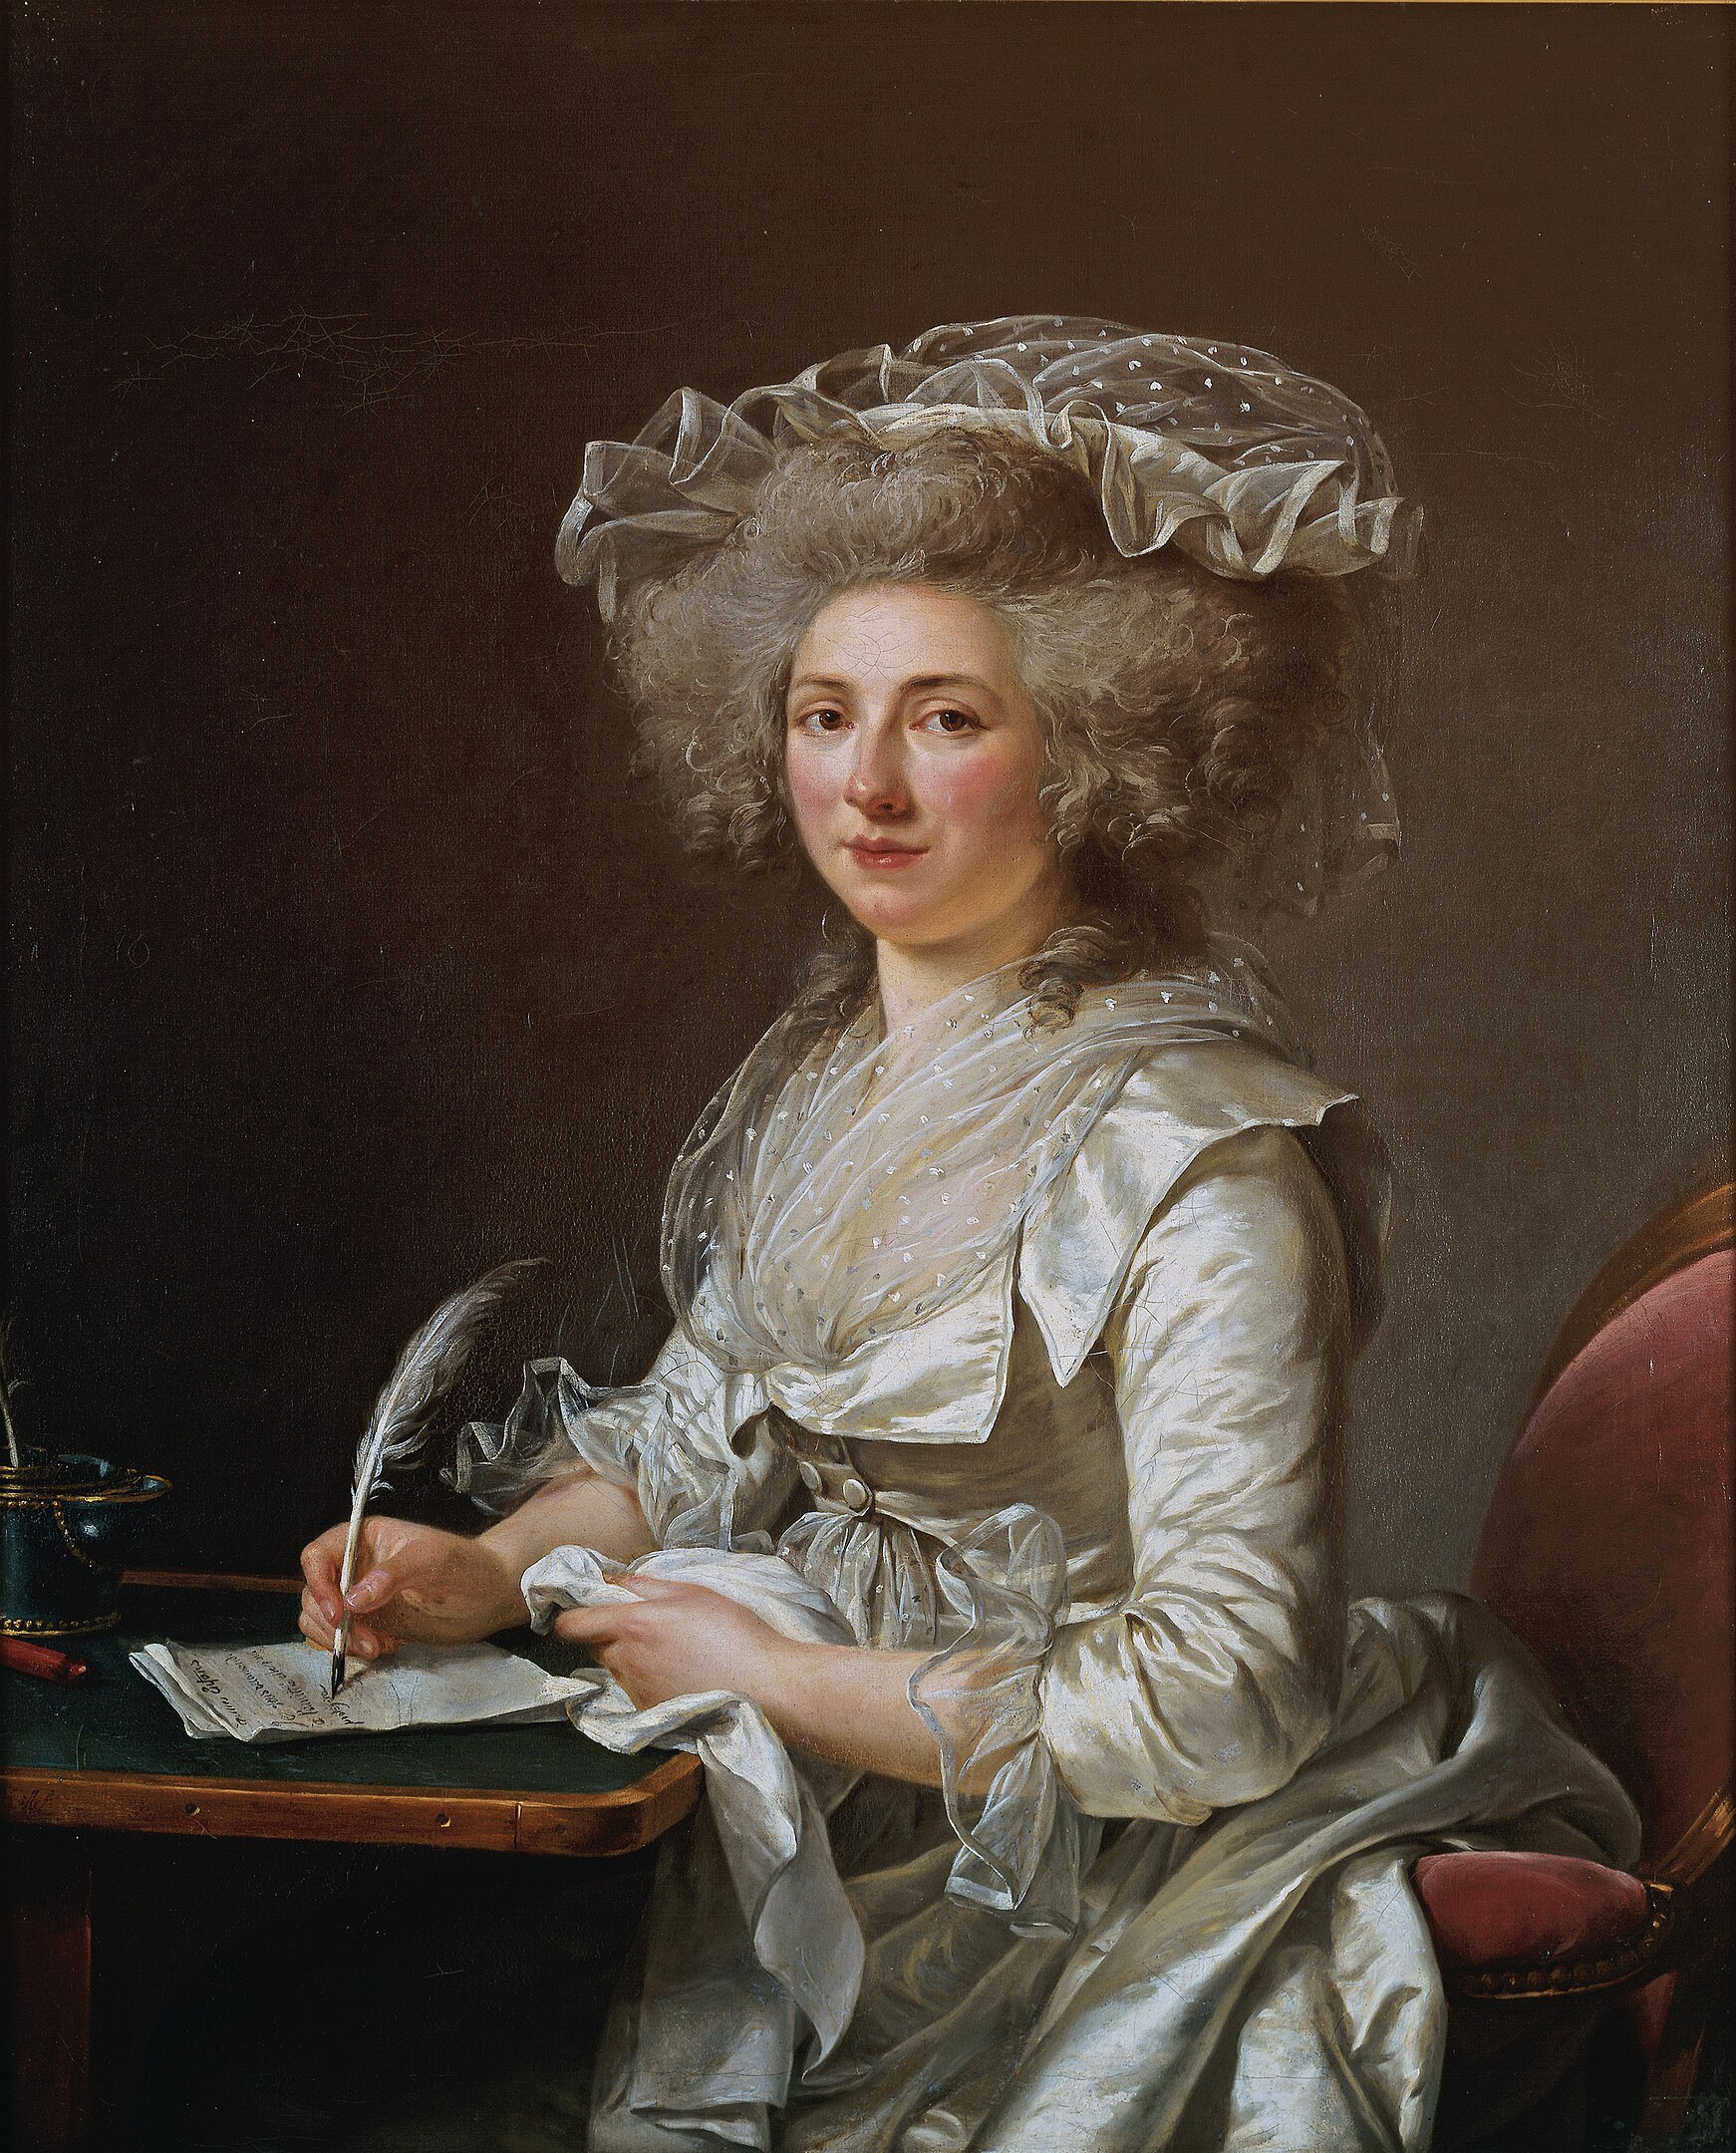 Adélaïde Labille-Guiard - 11. April 1749 - 24. April 1803